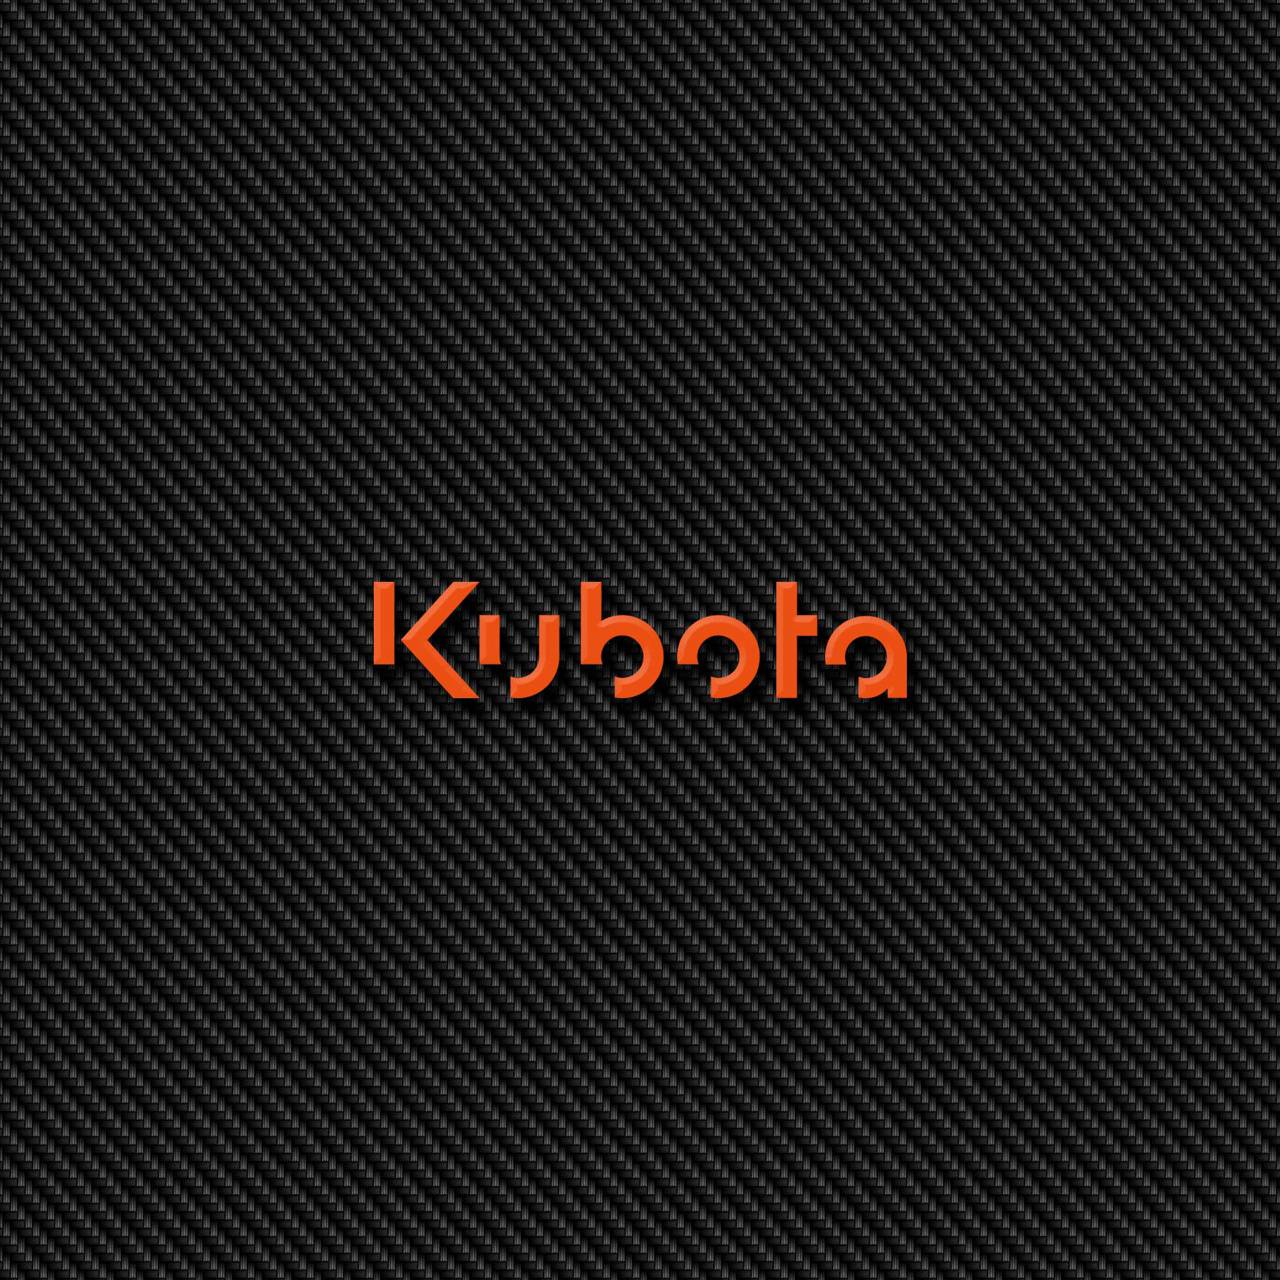 Kubota Carbon 2 wallpaper